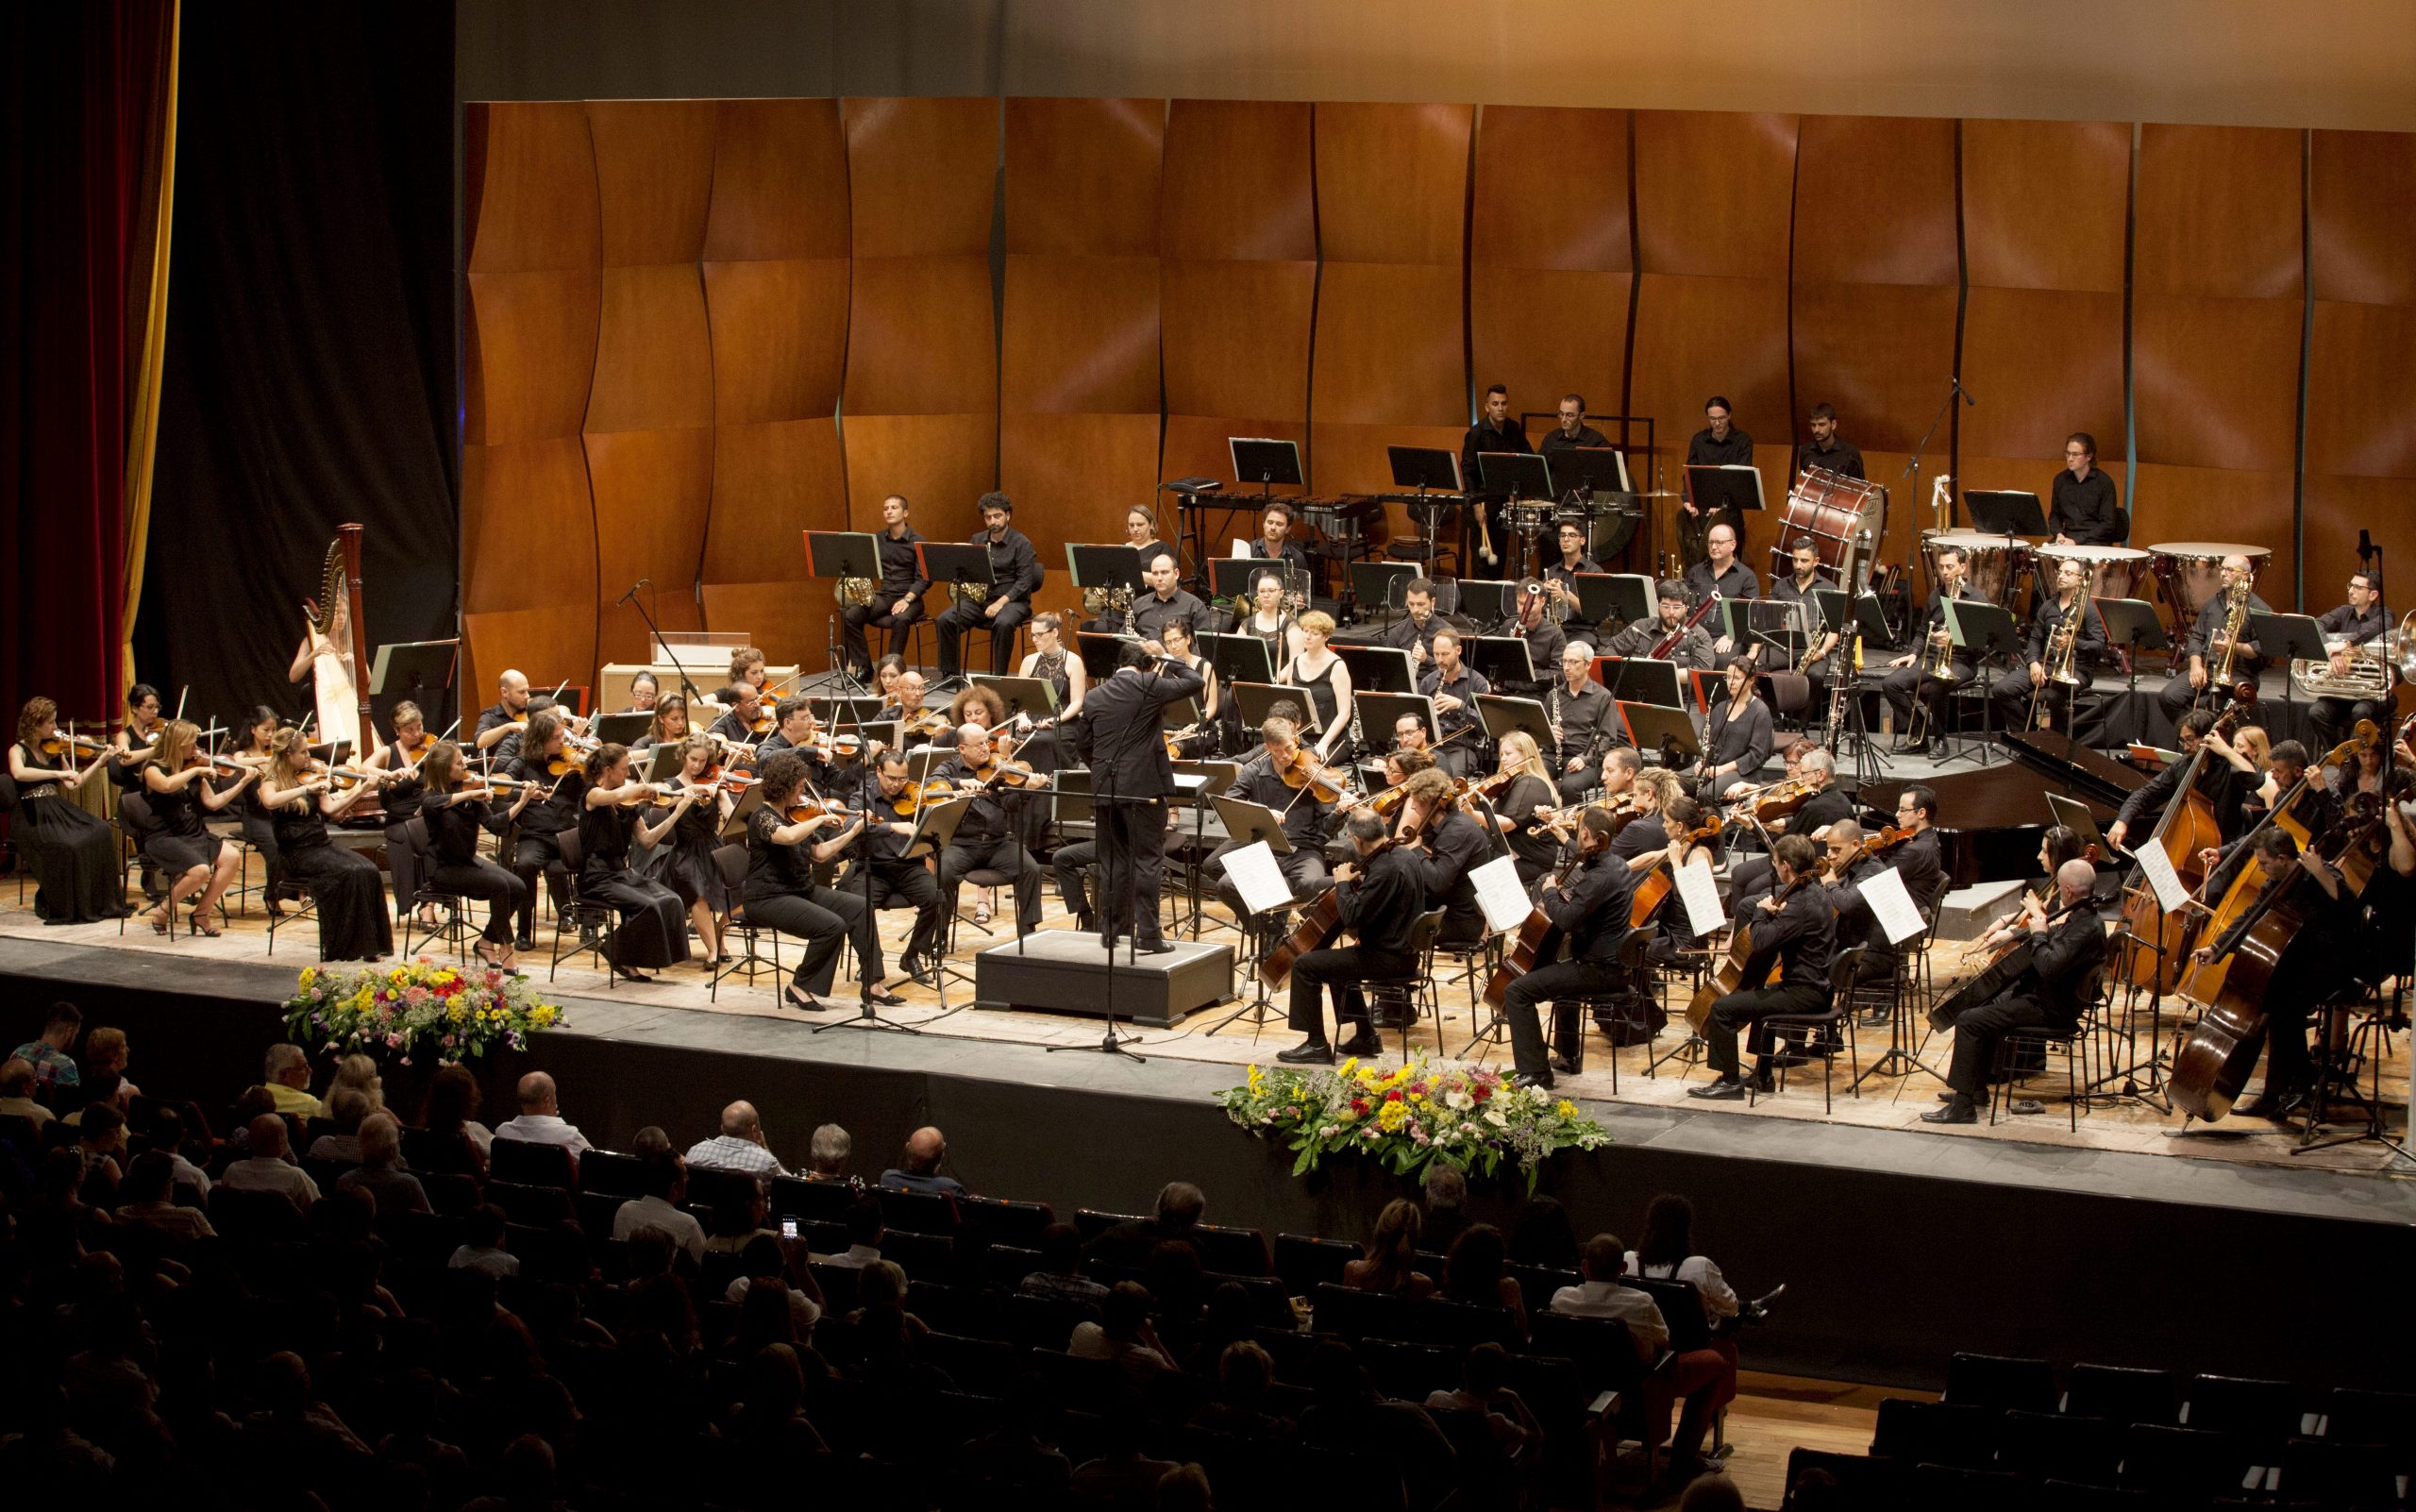 Classical music concert in Malta